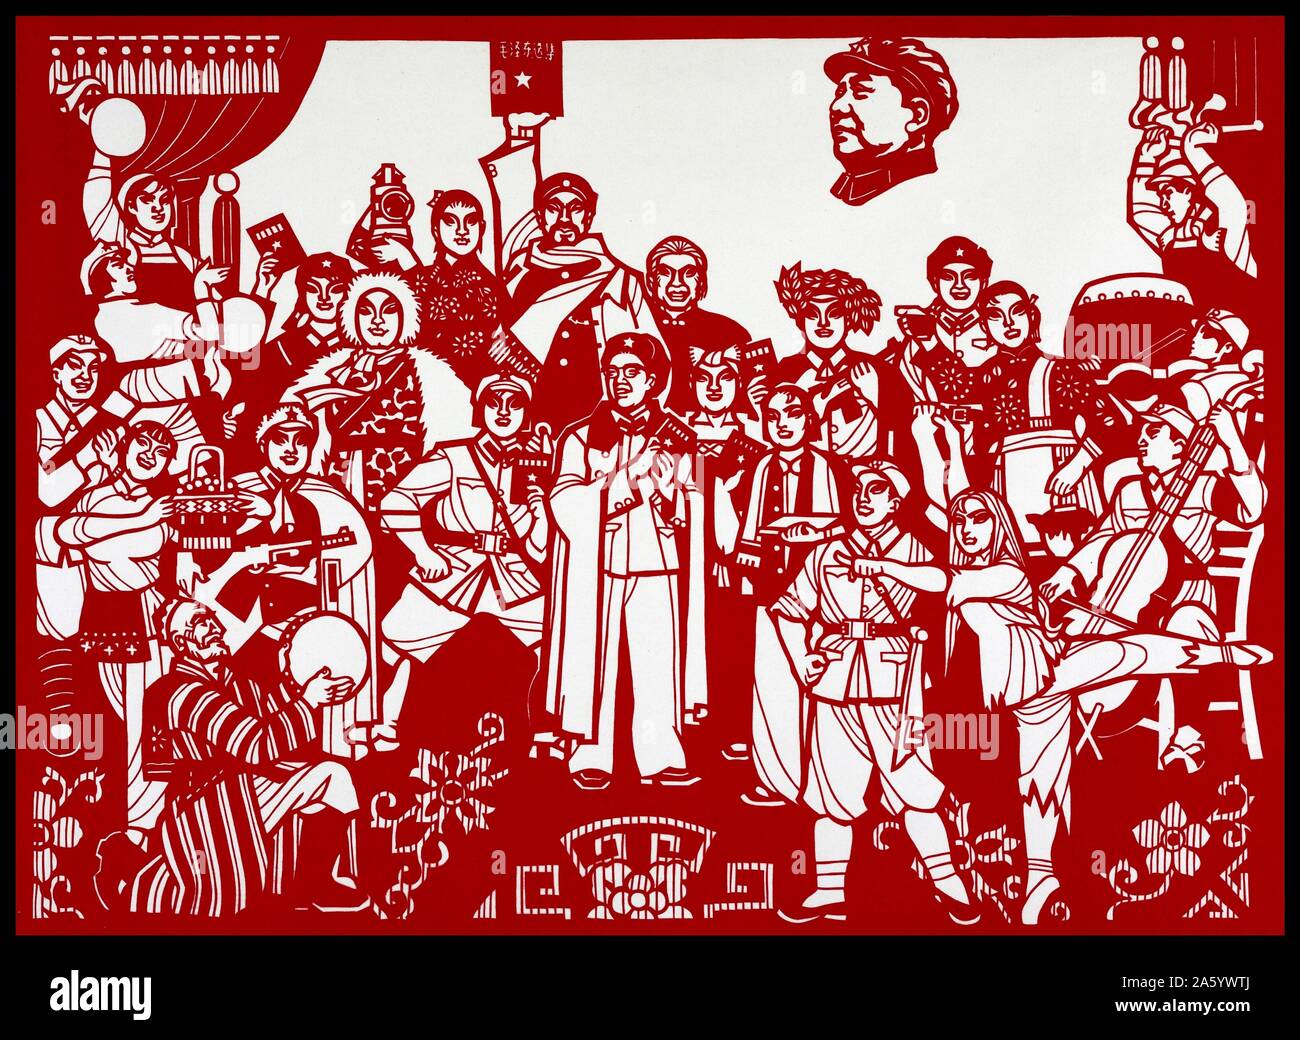 Un coupe papier affiche représentant le début de la Grande Révolution culturelle prolétarienne. Datée 2012 Banque D'Images